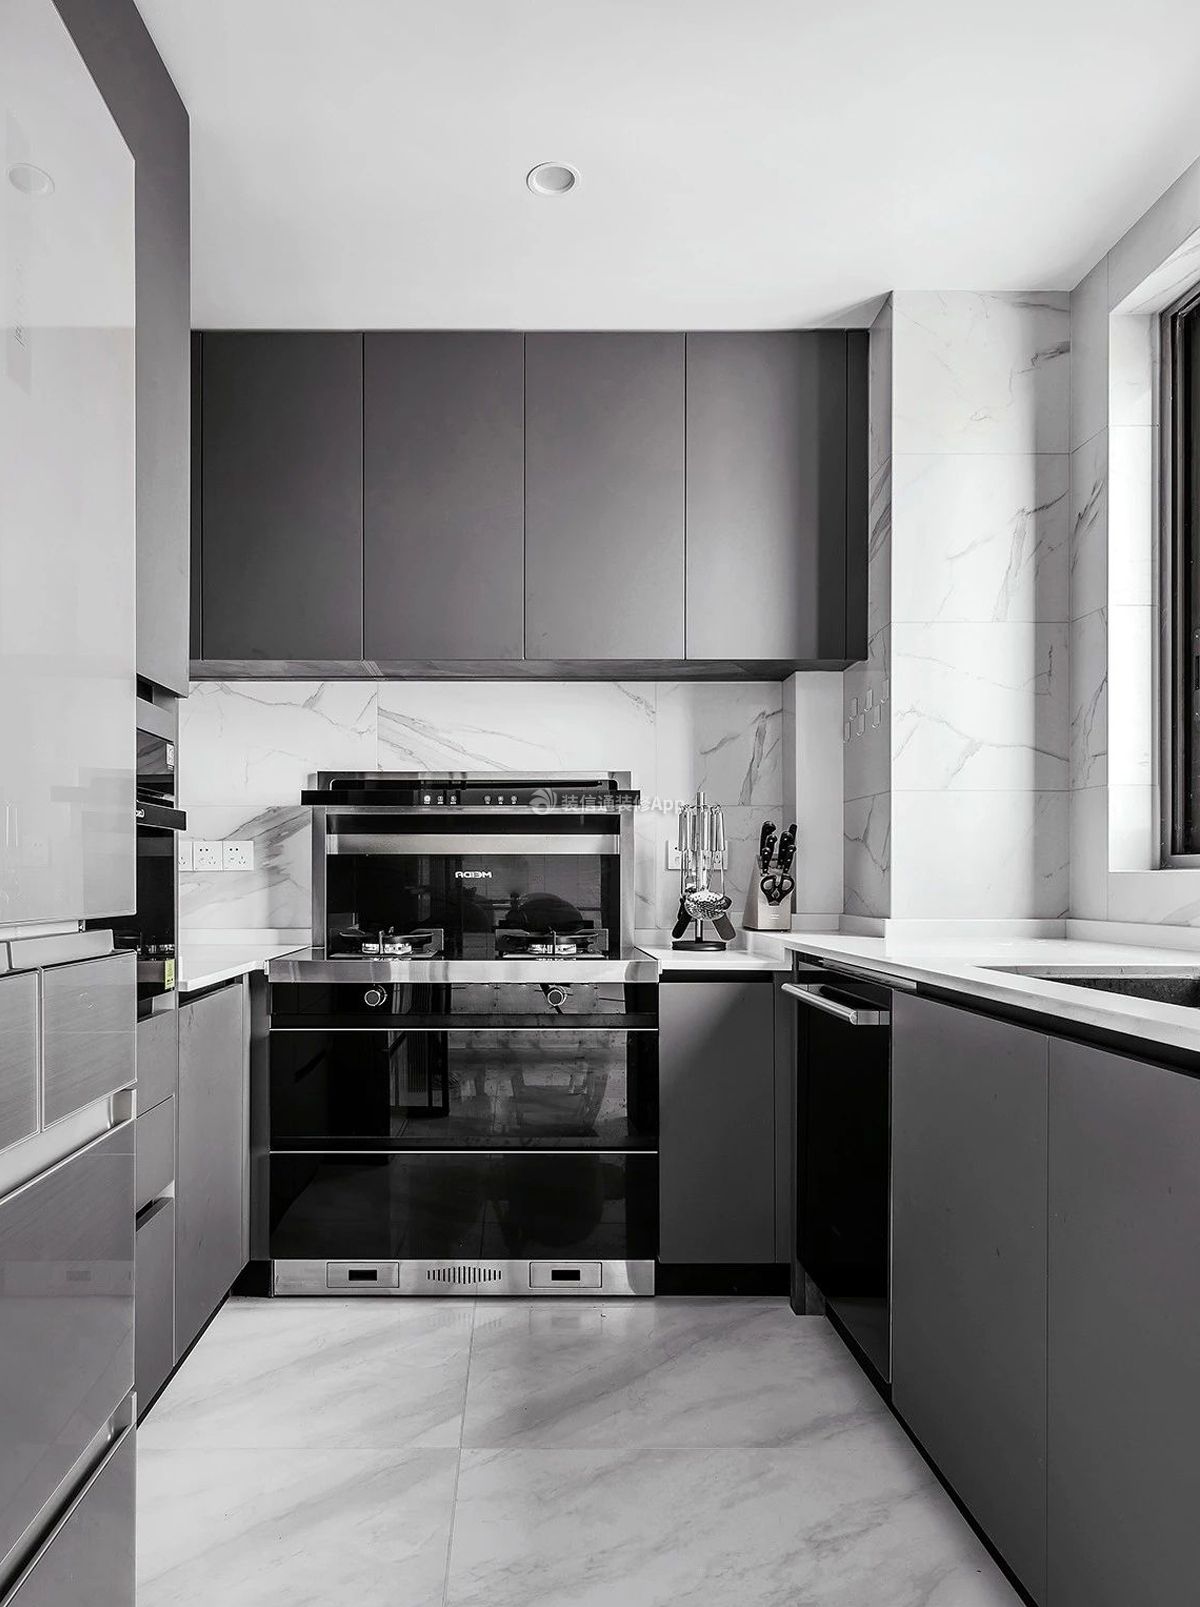 简约风格厨房灰色橱柜装饰效果图